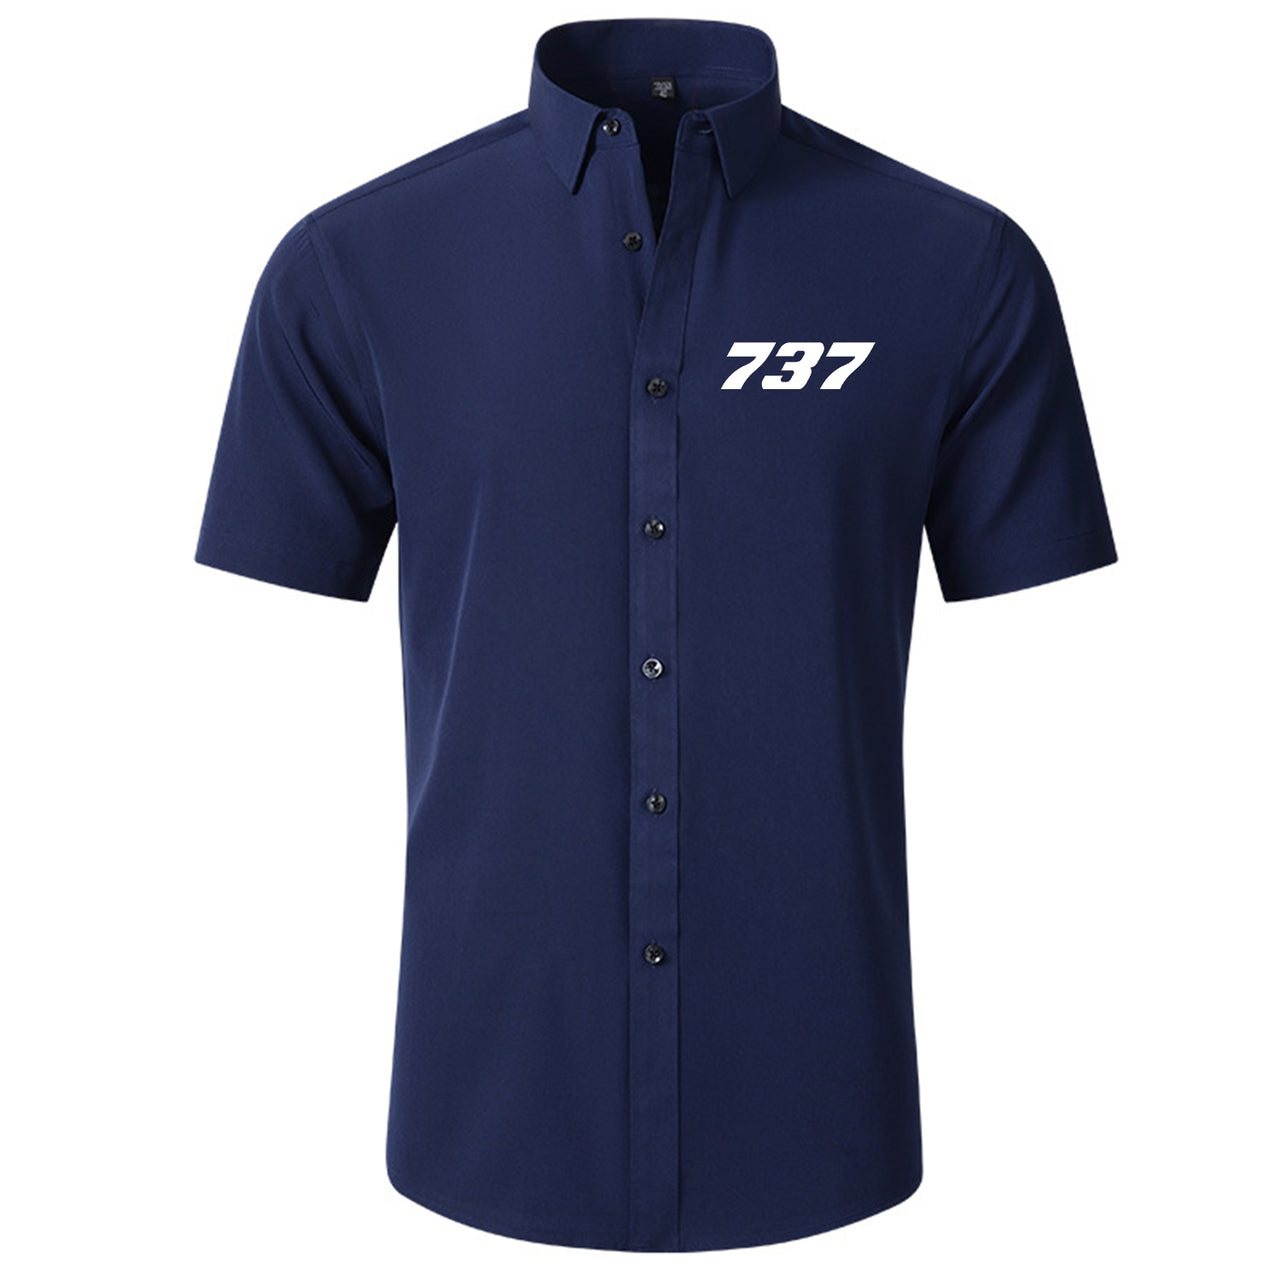 737 Flat Text Designed Short Sleeve Shirts